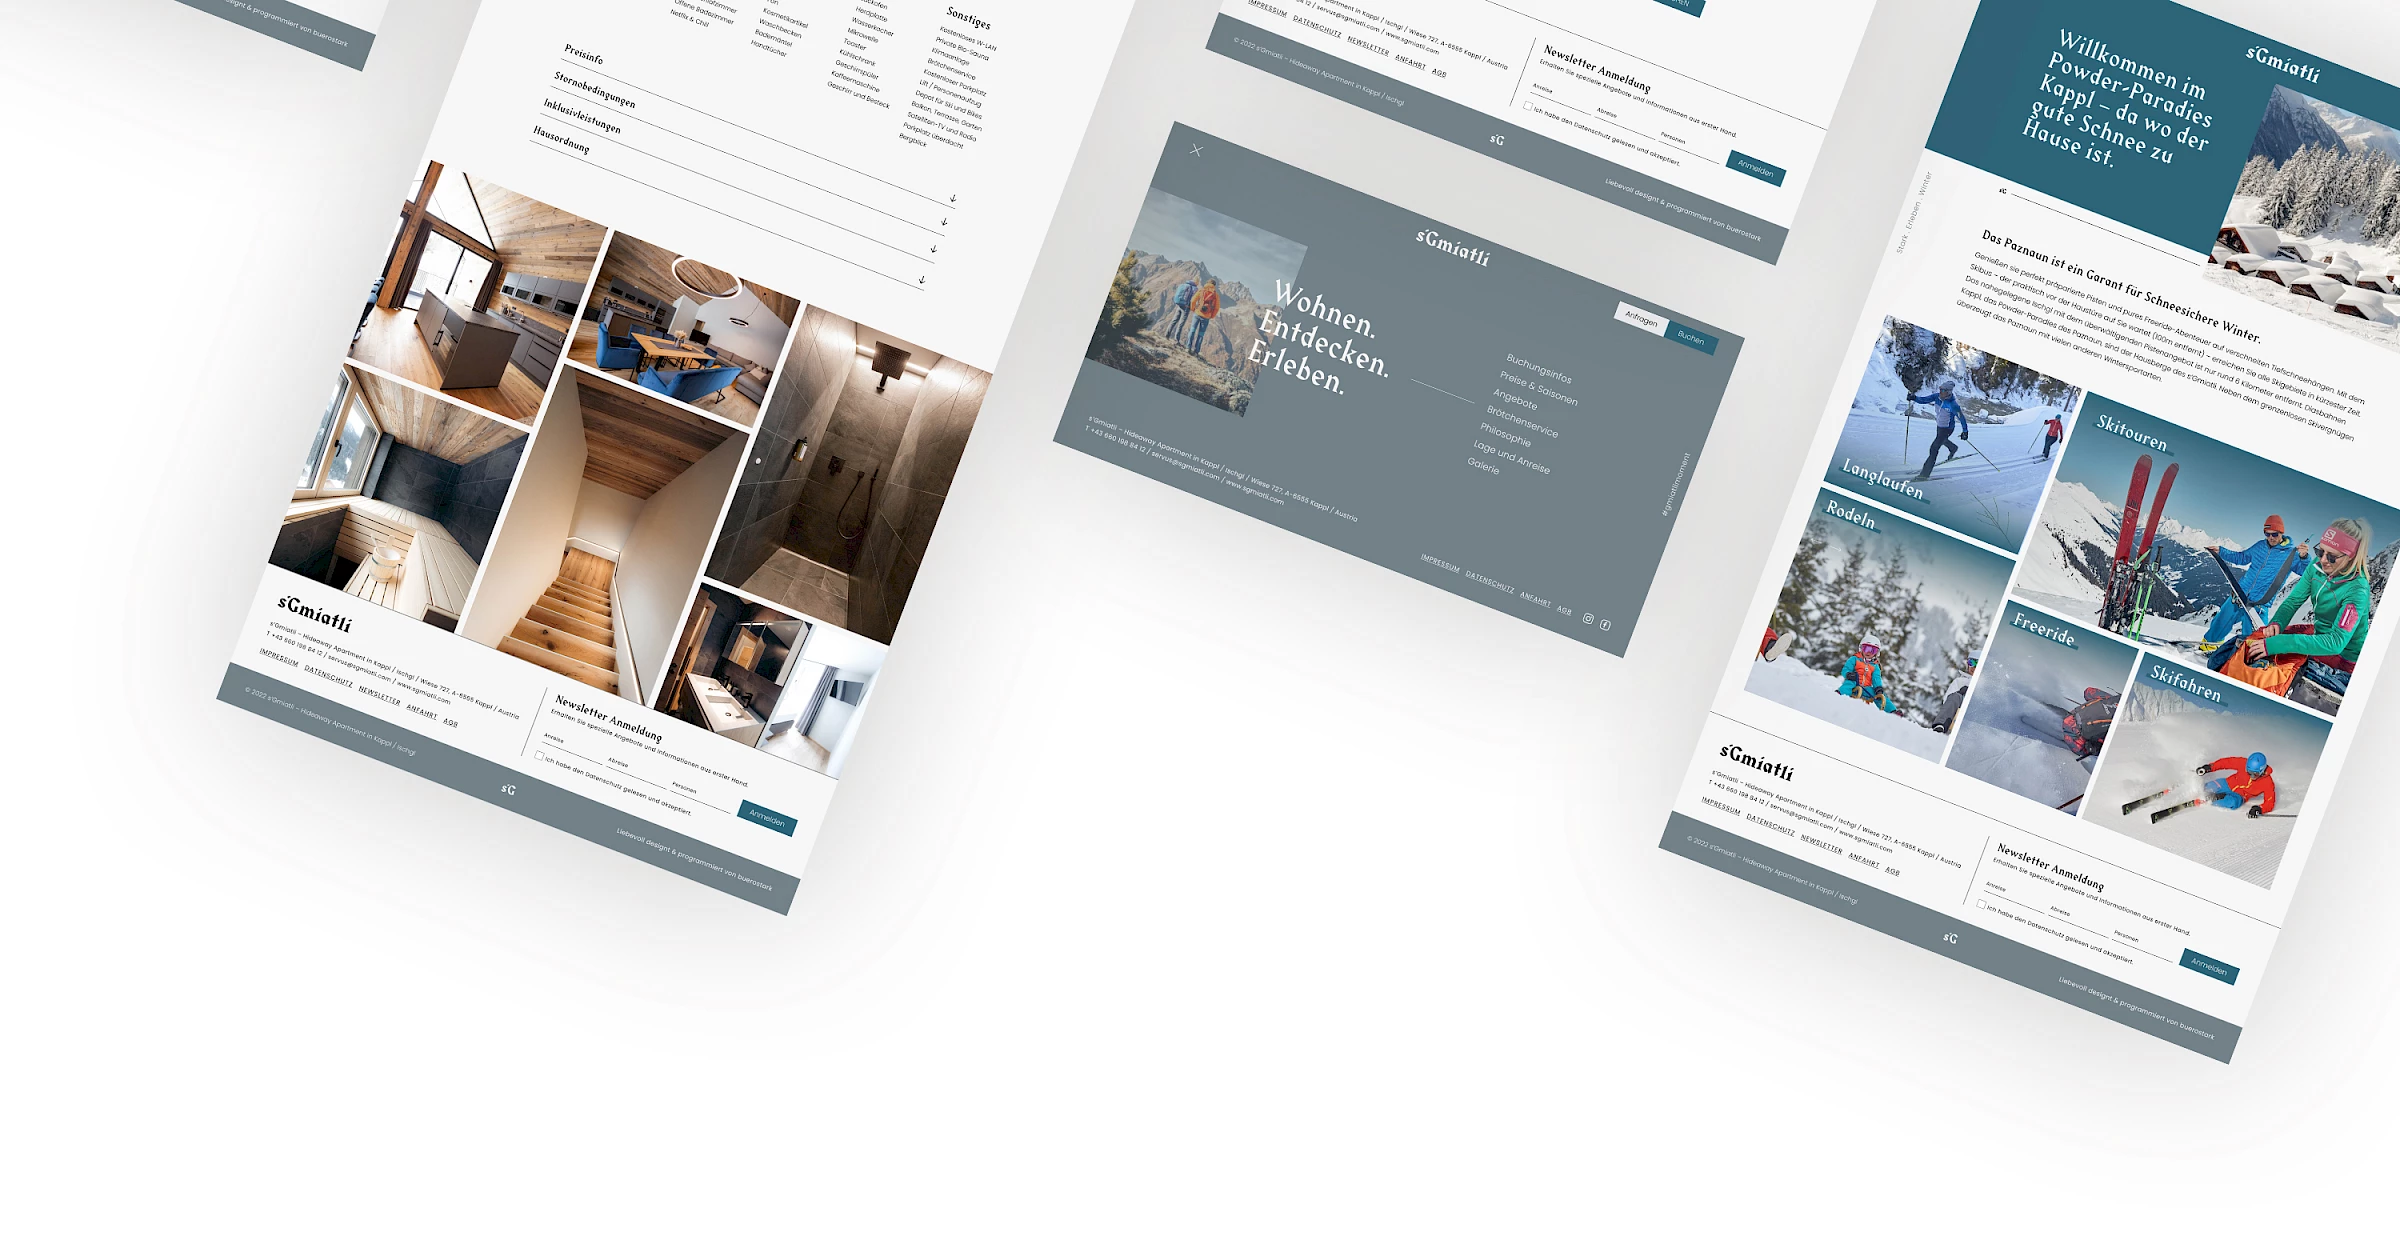 Webdesign der Website sgmiatli.com, designed und programmiert von Buerostark Werbeagentur in Telfs